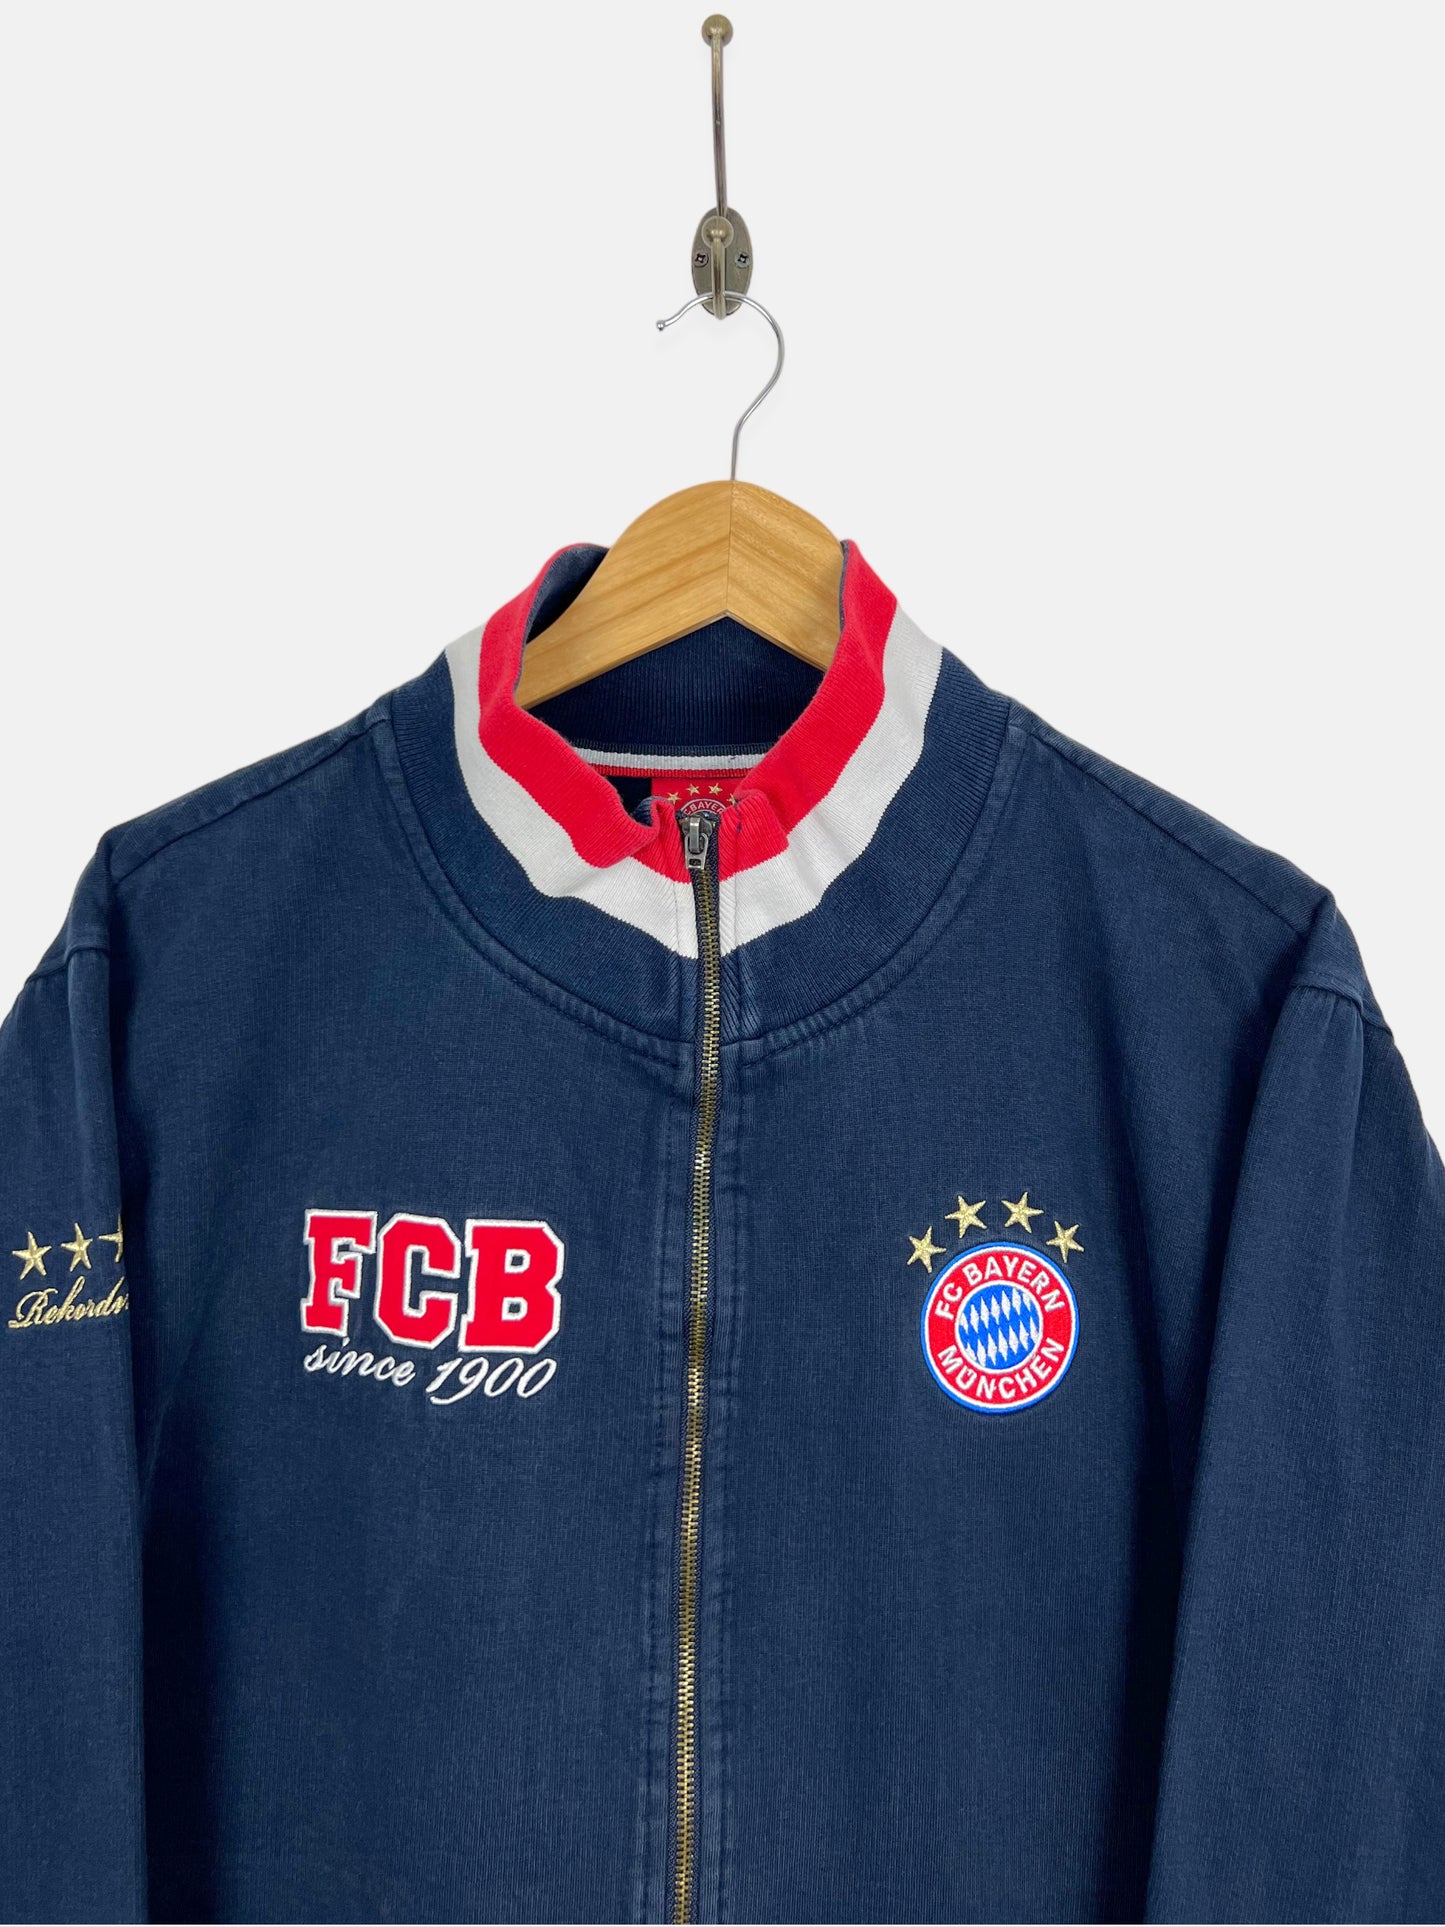 90's Bayern Munich Embroidered Vintage Zip-Up Sweatshirt/Jacket Size M-L